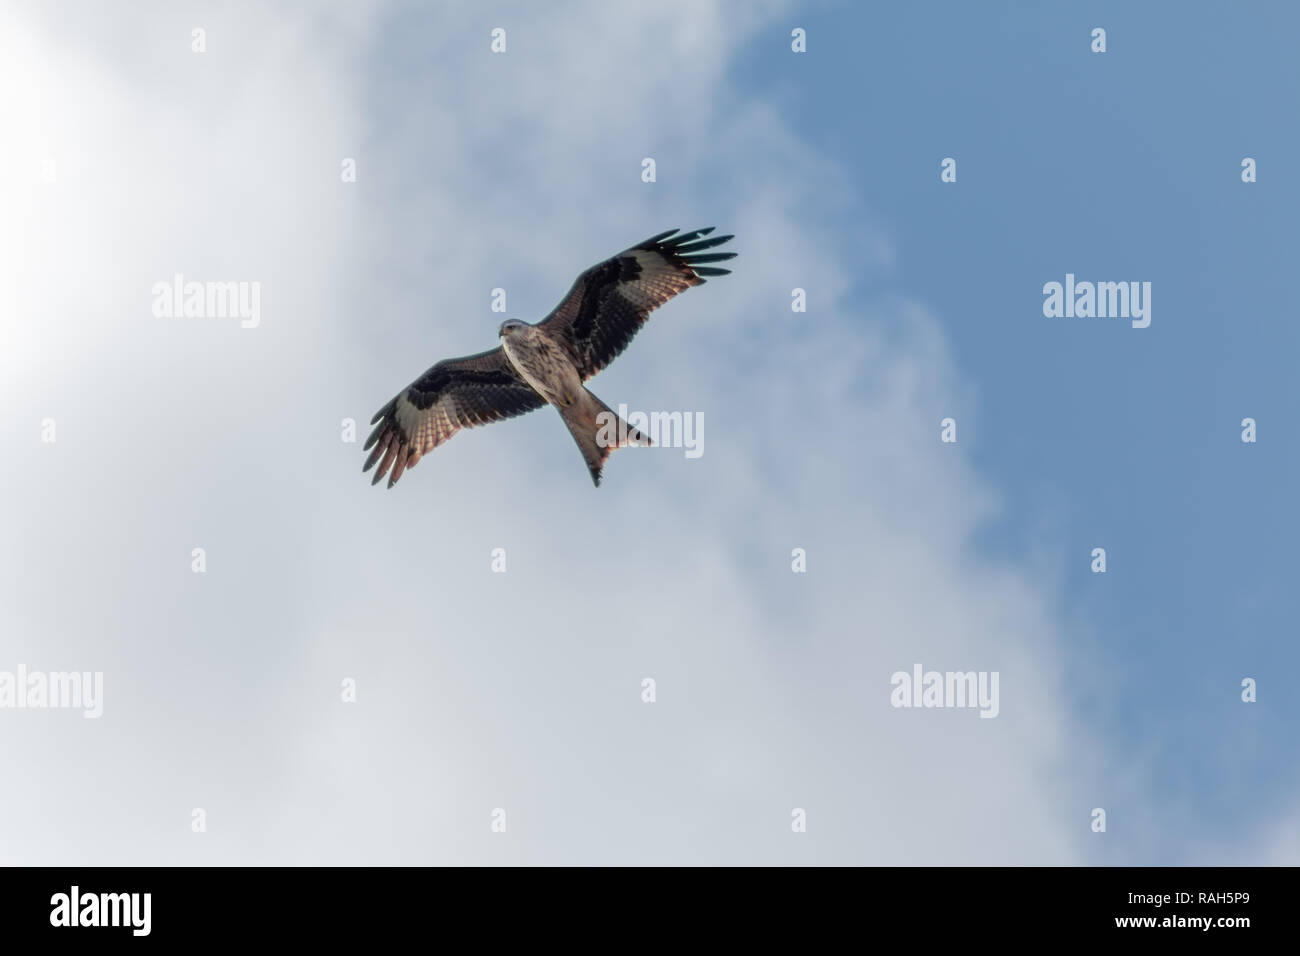 Oiseau de proie - cerf-volant dans le ciel Banque D'Images